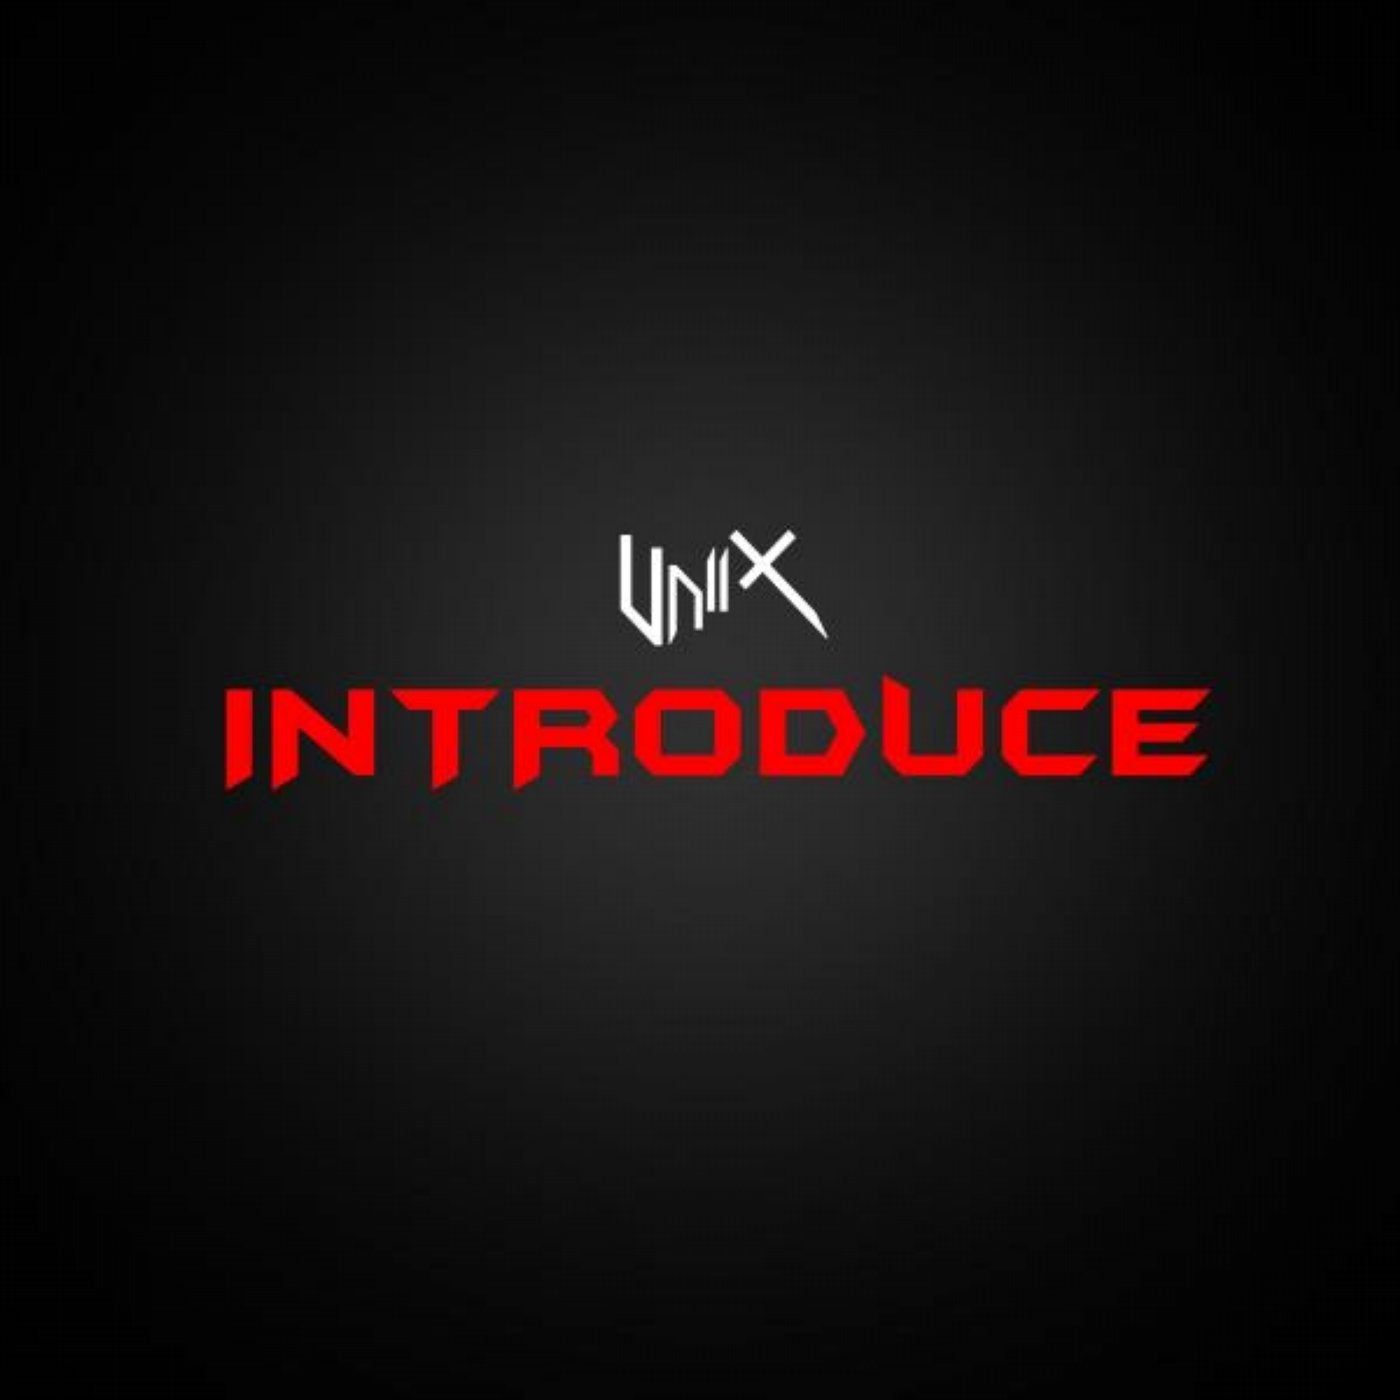 Introduce (Original Mix)